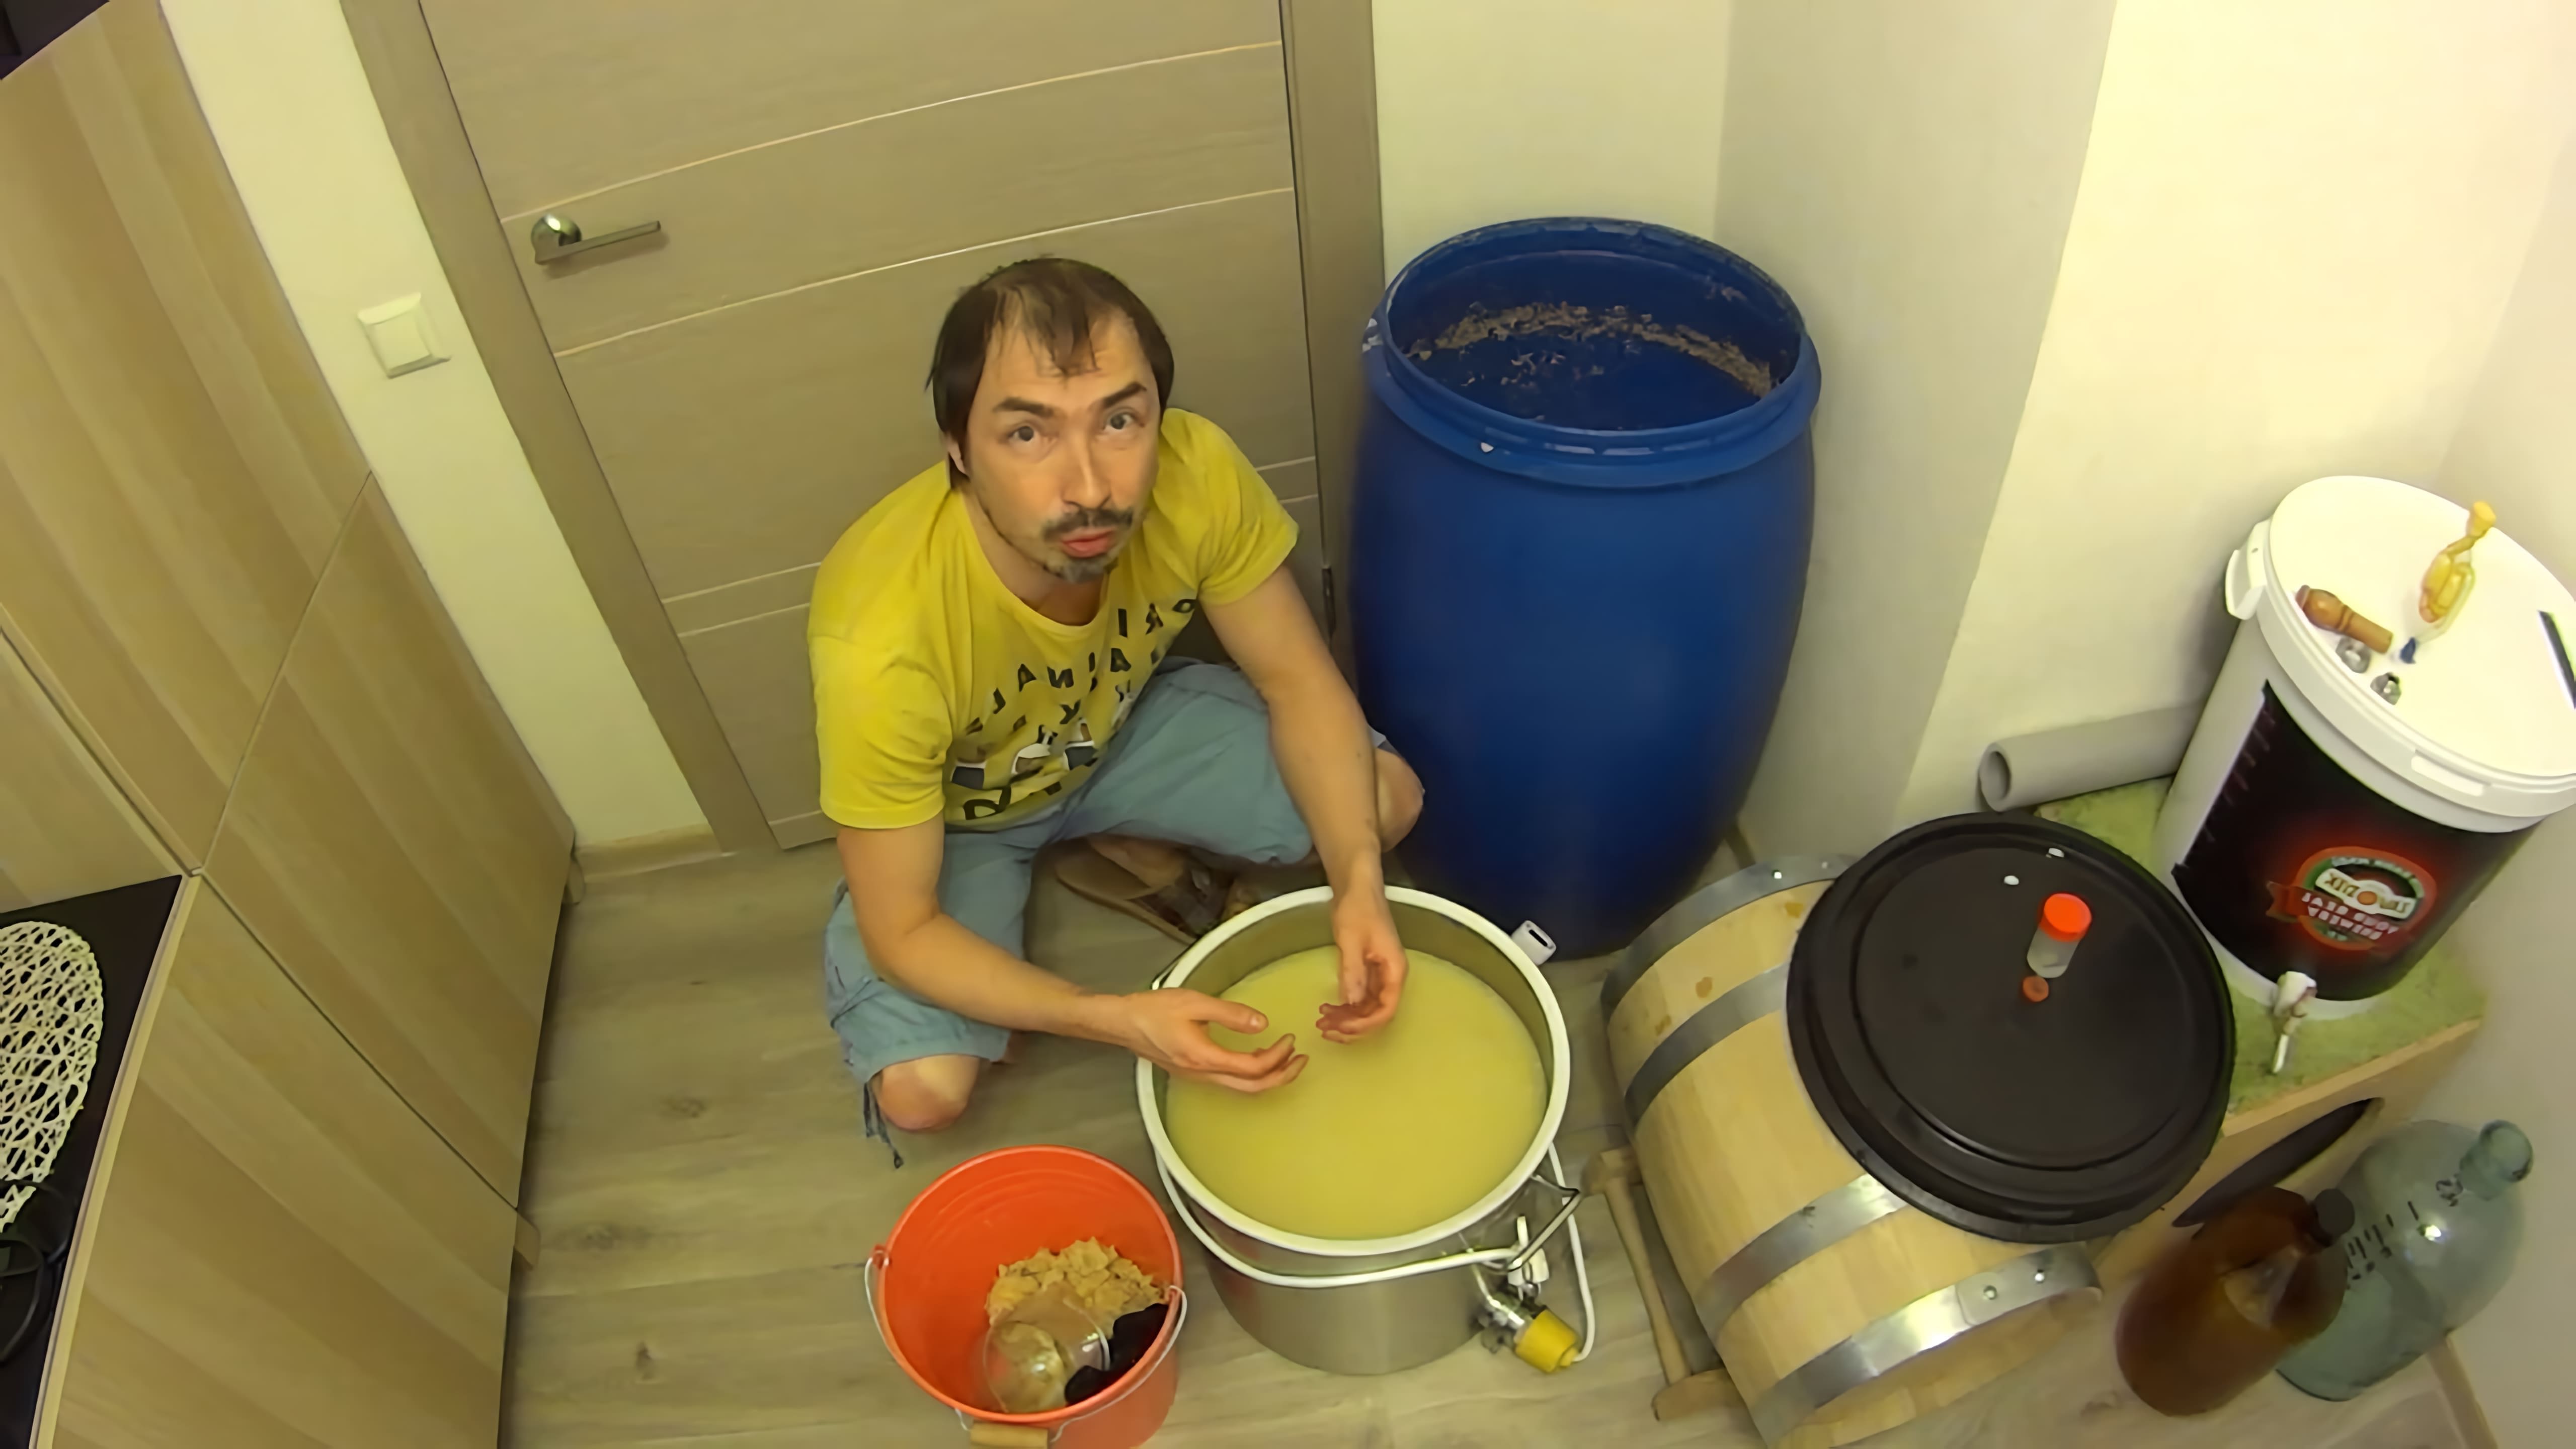 В этом видео демонстрируется процесс изготовления бурбона в домашних условиях